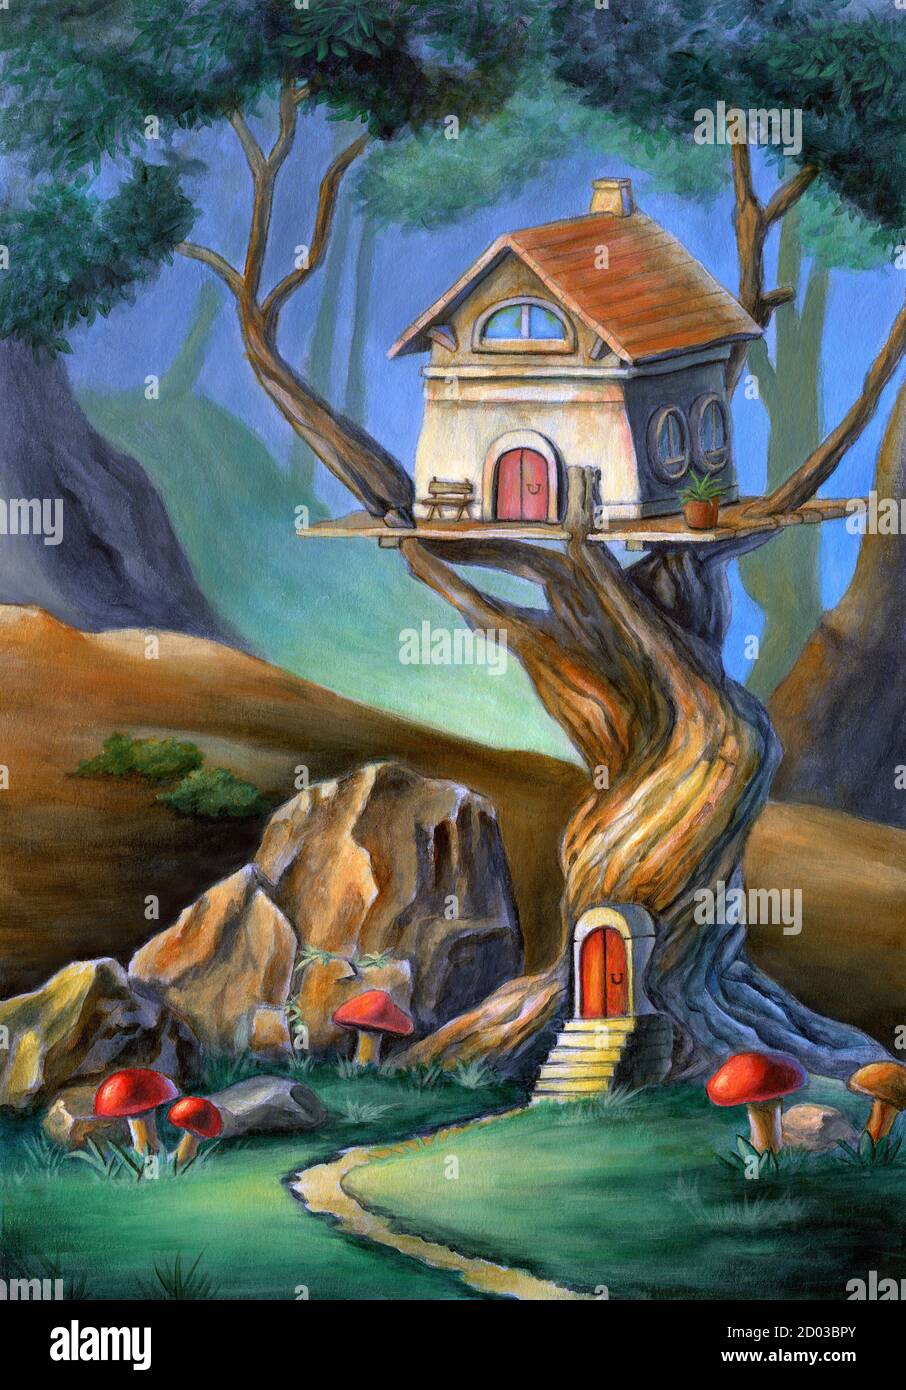 Scène fantaisie avec une maison mignonne sur un arbre. Illustration de supports mixtes, acrylique et crayon de couleur sur papier. Banque D'Images